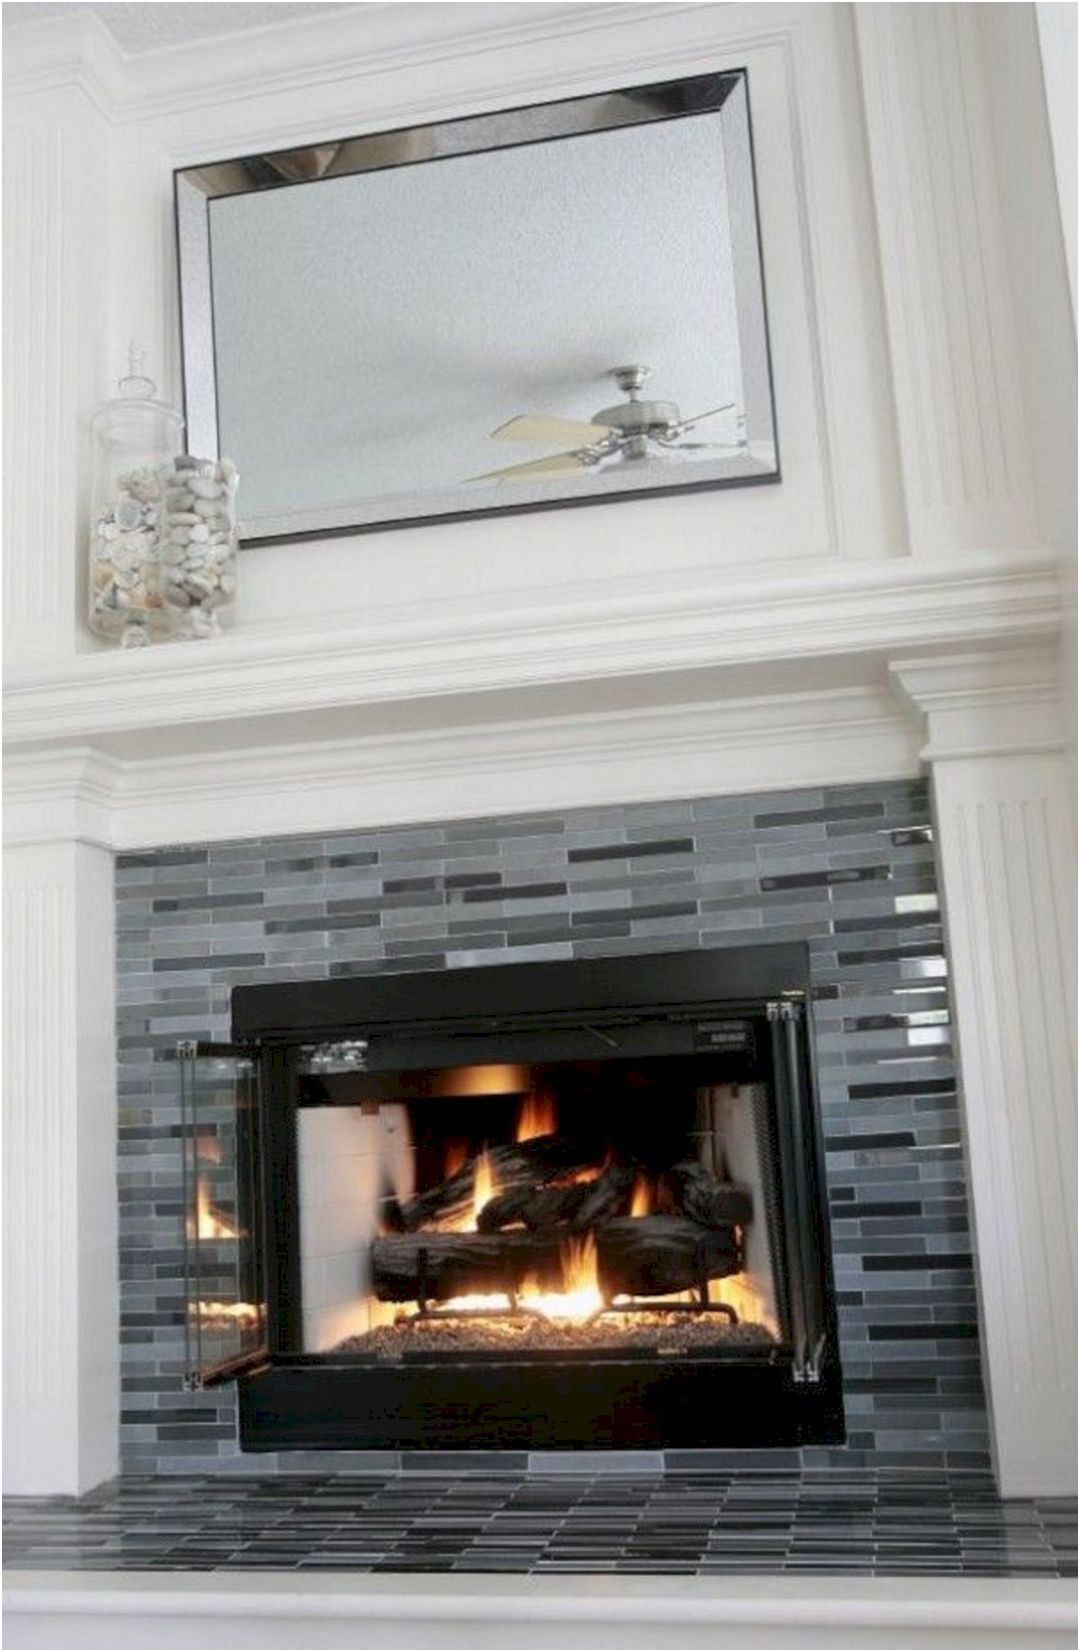 Inspirational Tile Fireplace Designs Photos